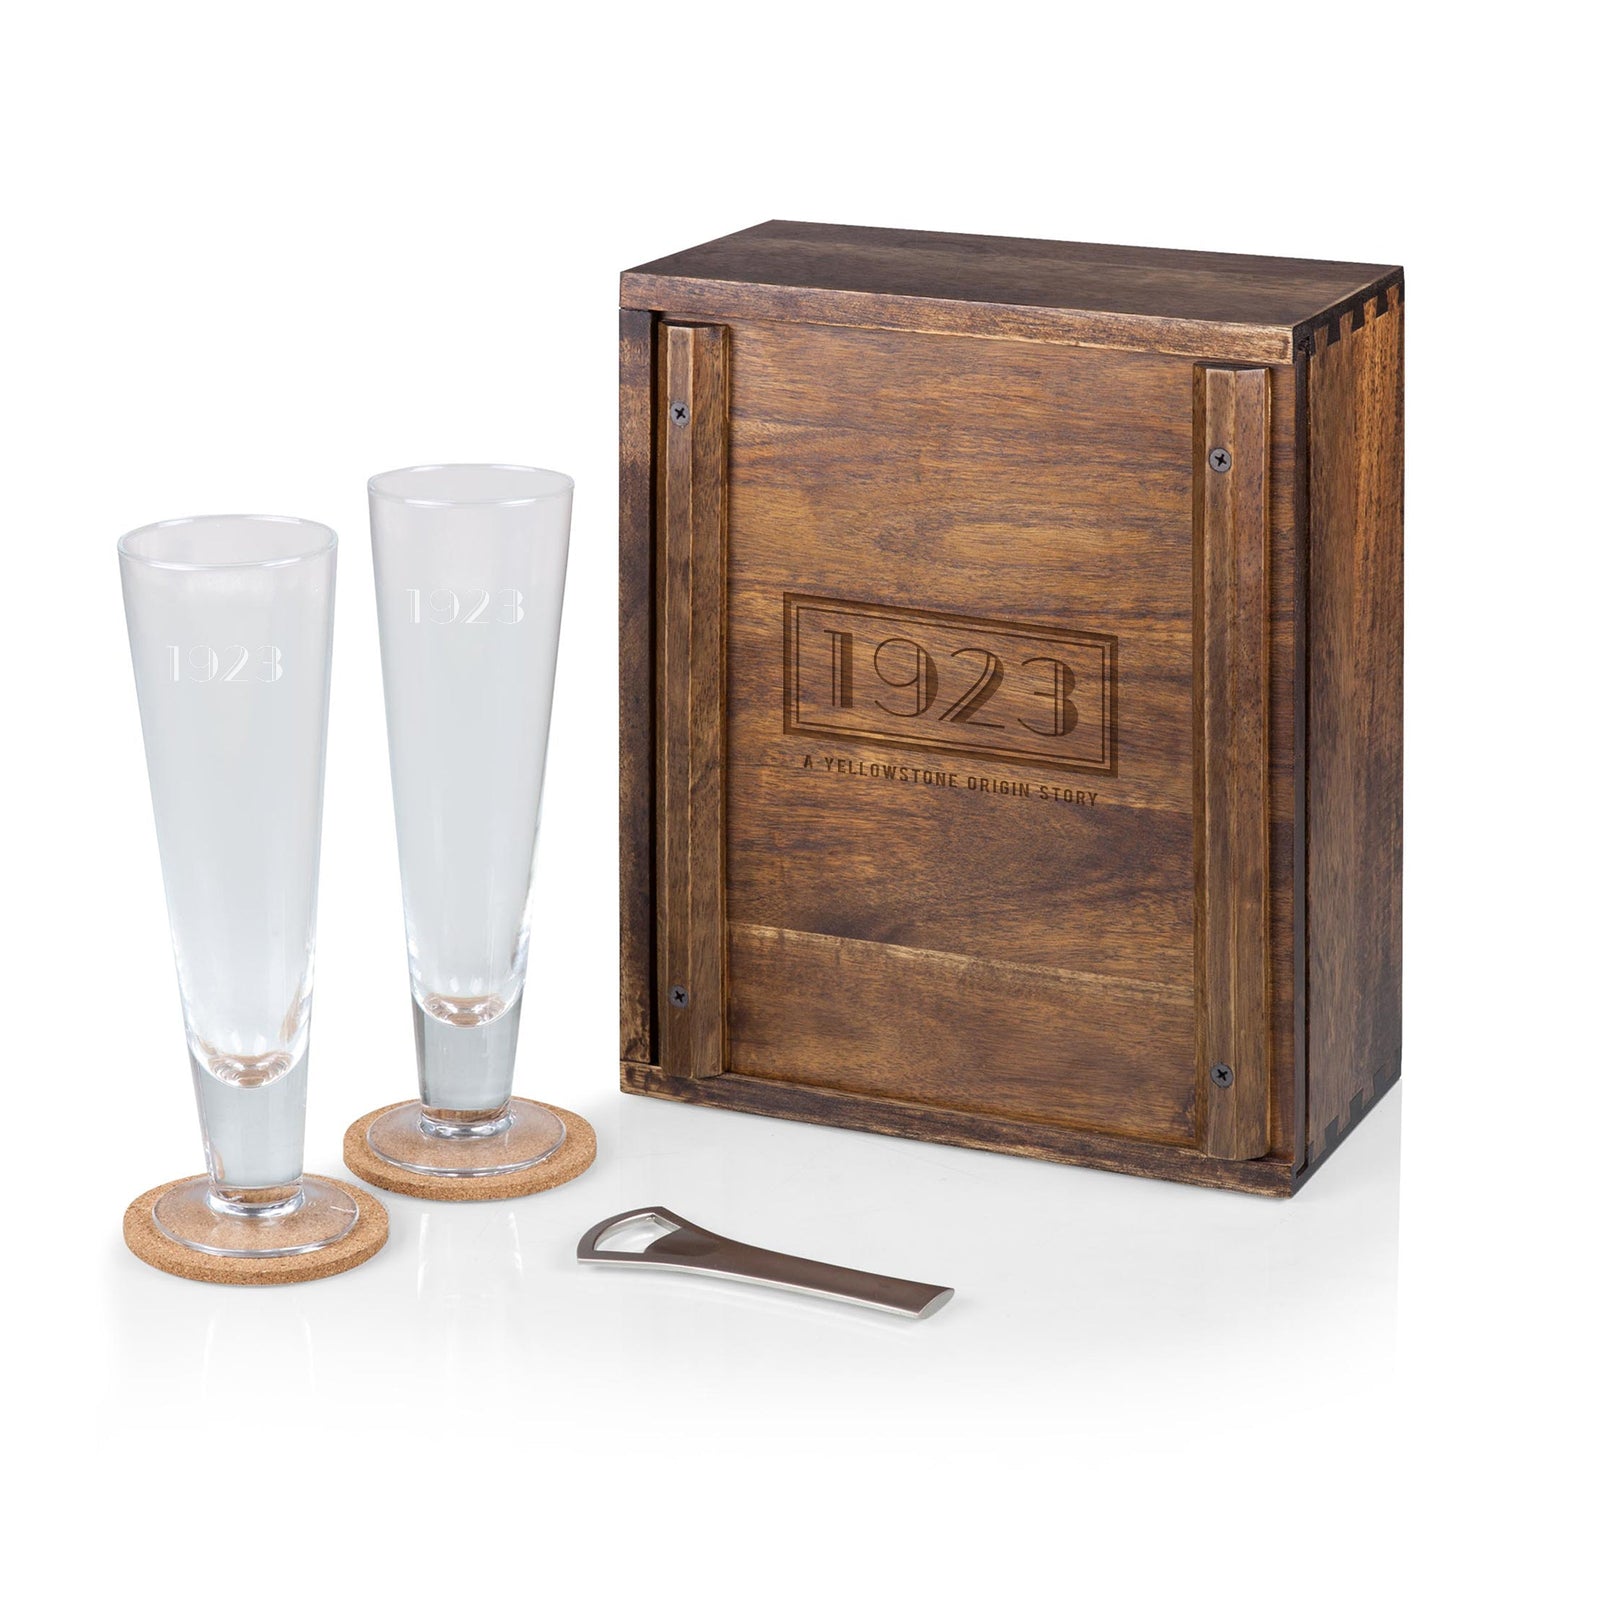 1923 Pilsner Beer Glass Gift Set